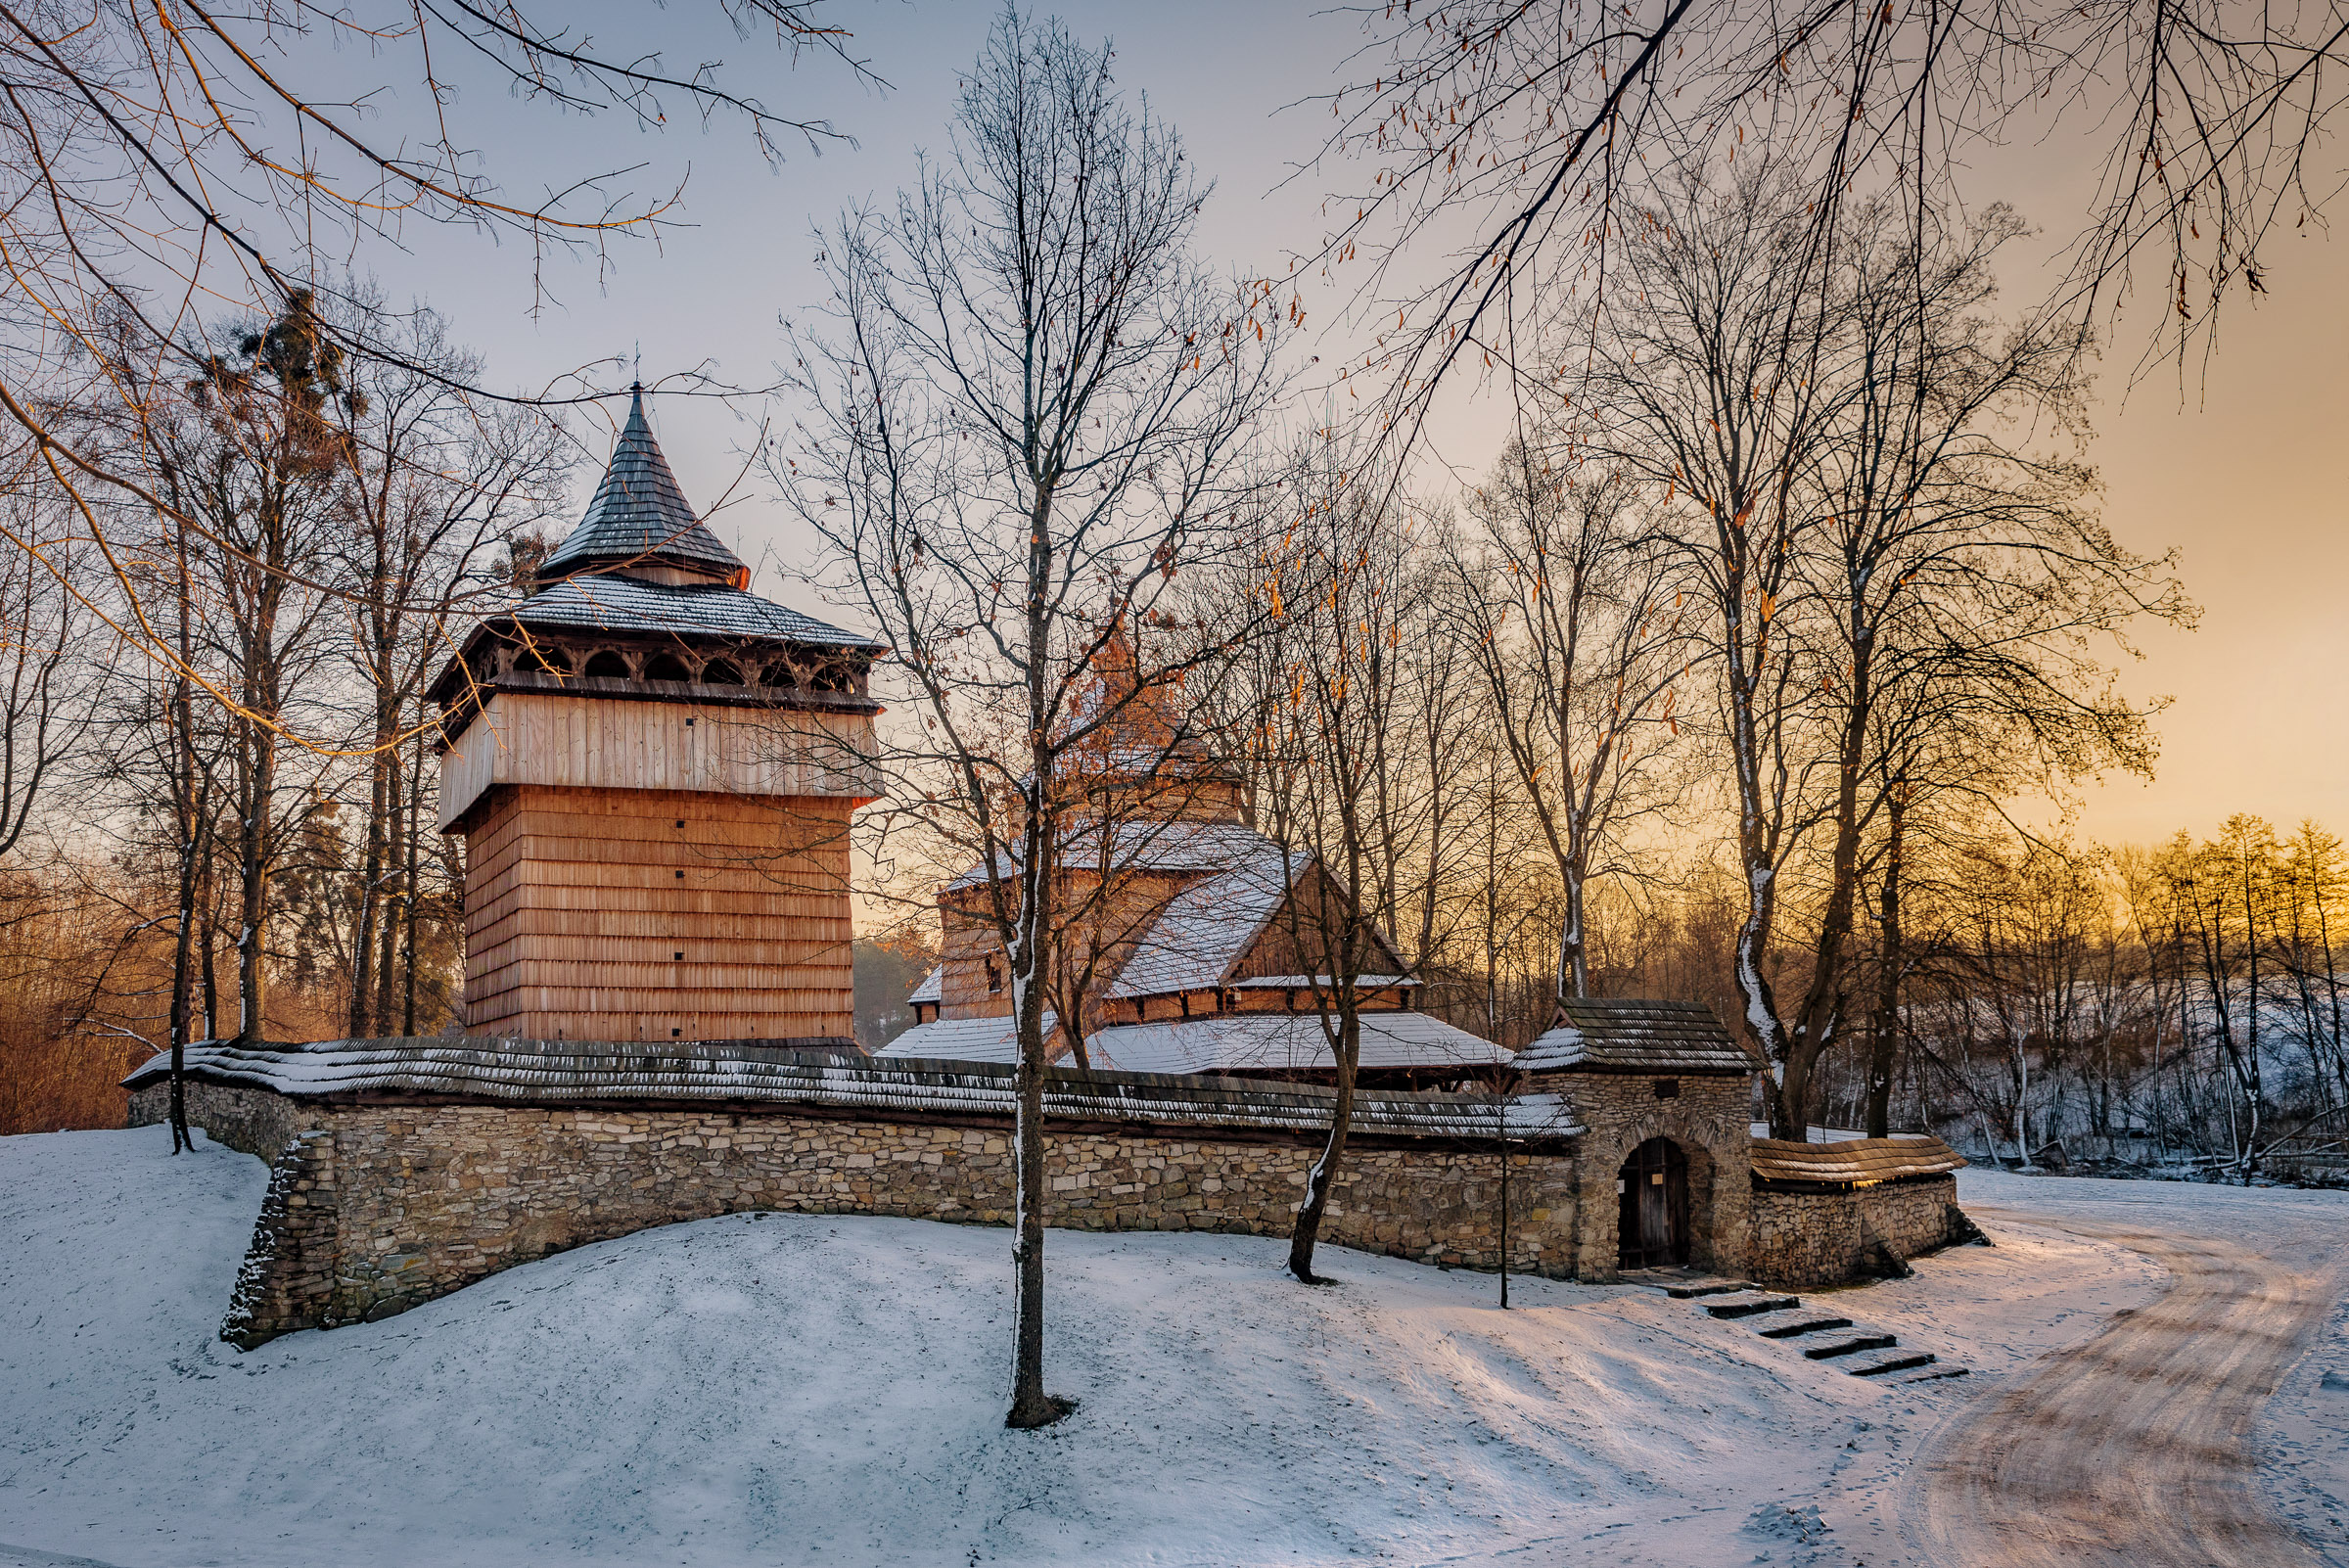 Zimowy zachód słońca. Drewniana cerkiew otoczona kamiennym murem pośród drzew.